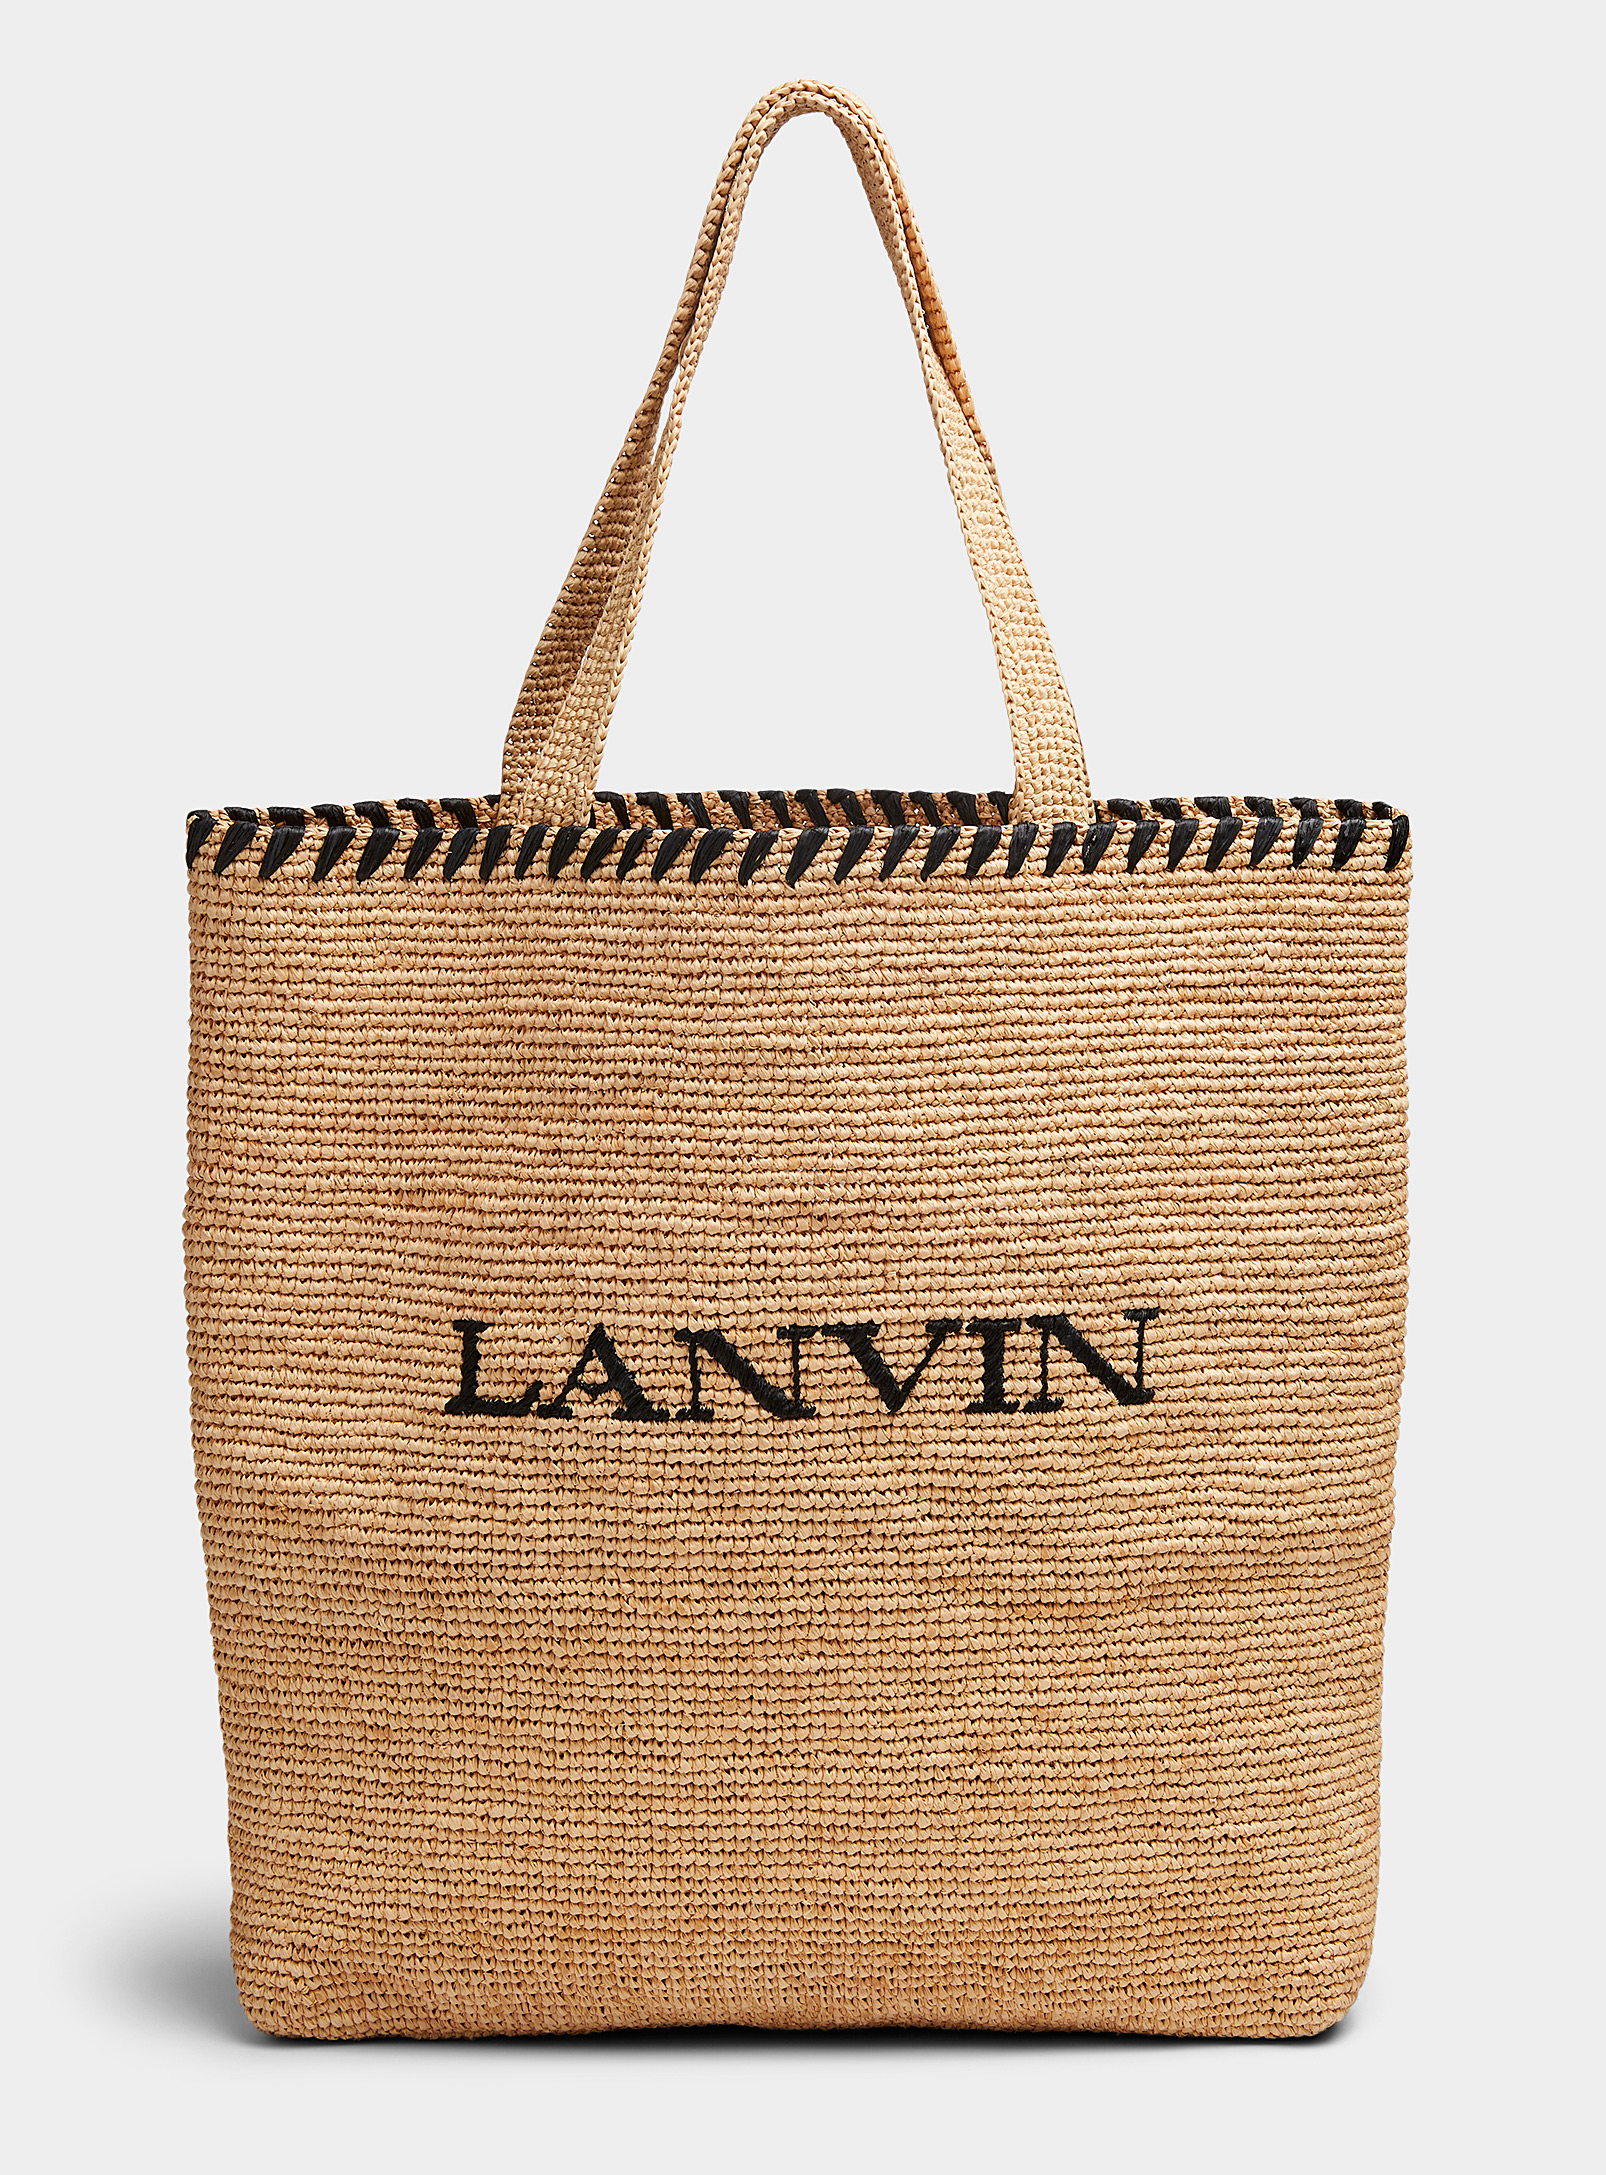 Lanvin - Le sac cabas en raphia